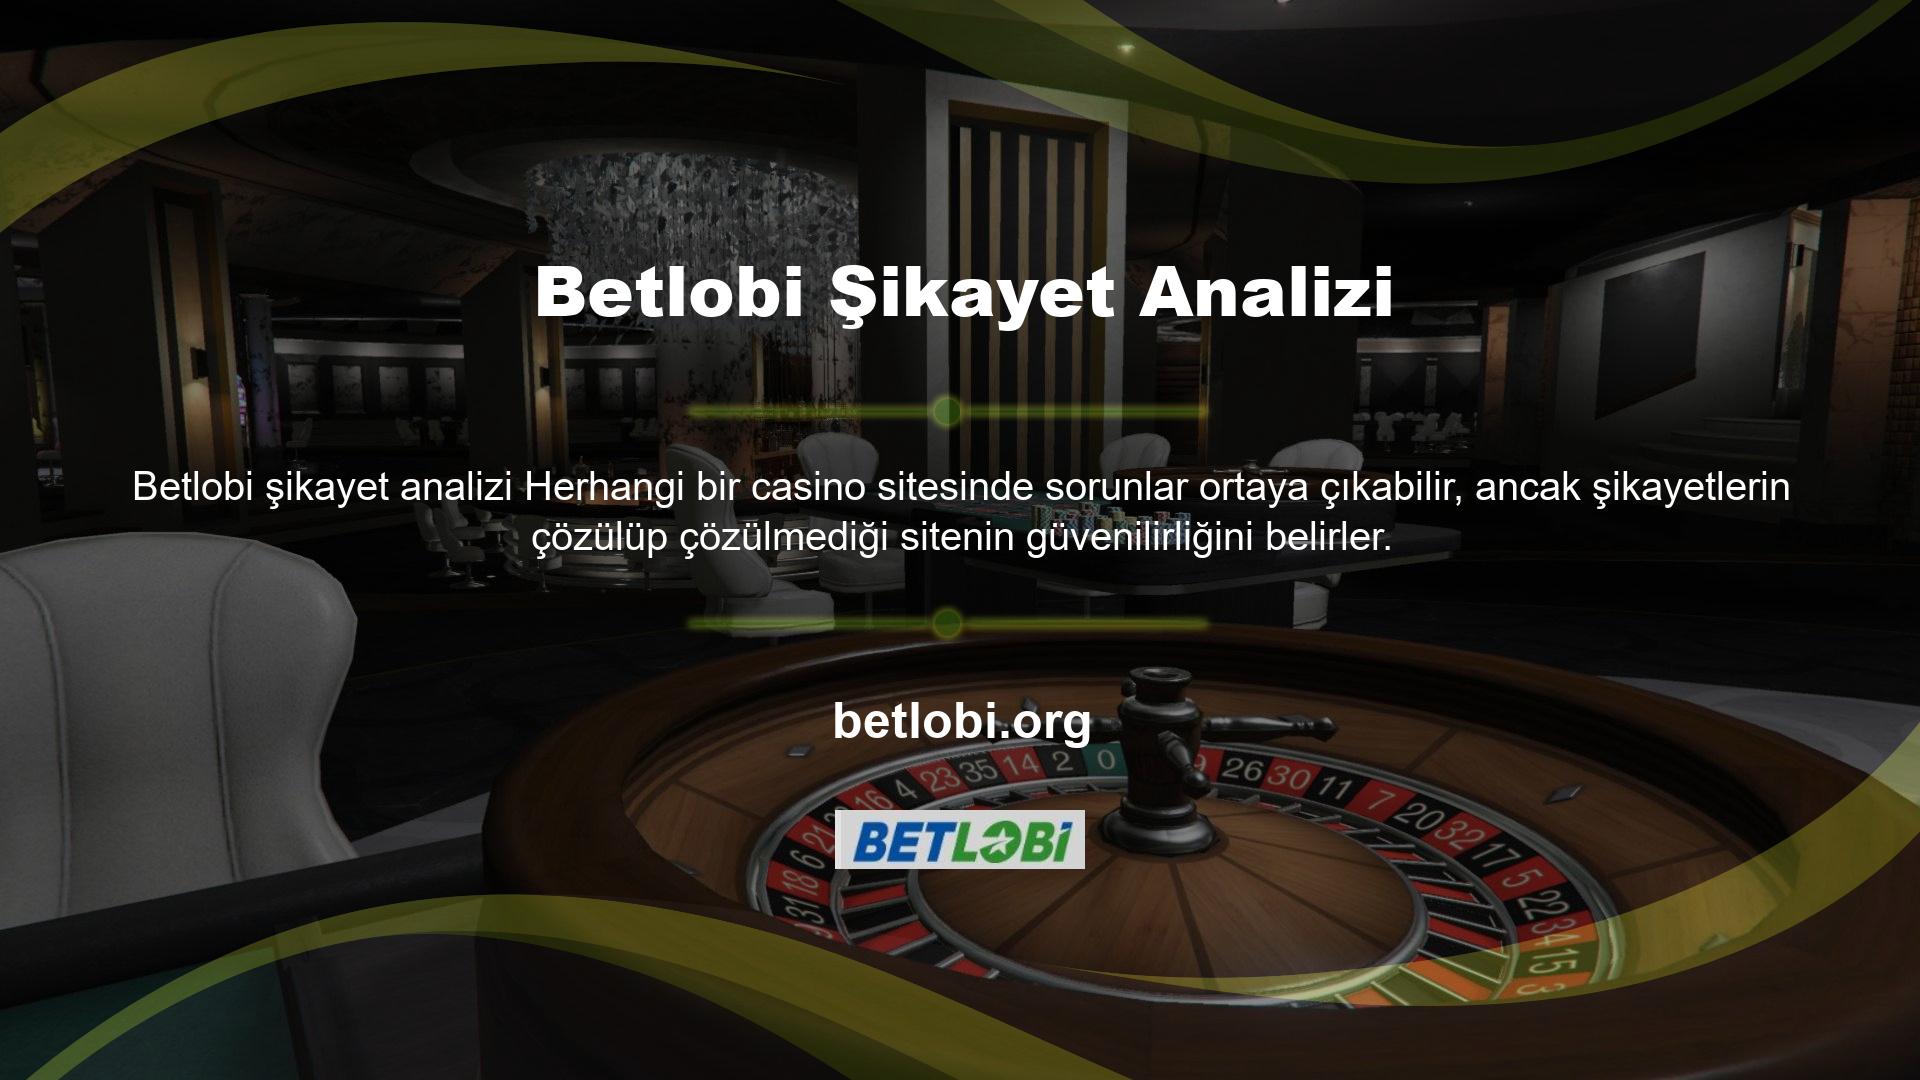 Betlobi Online Bahis Sitesi, bu konu ile ilgili şikayetlere anında dönüş yapacak ve konuyu ivedilikle çözüme kavuşturacaktır